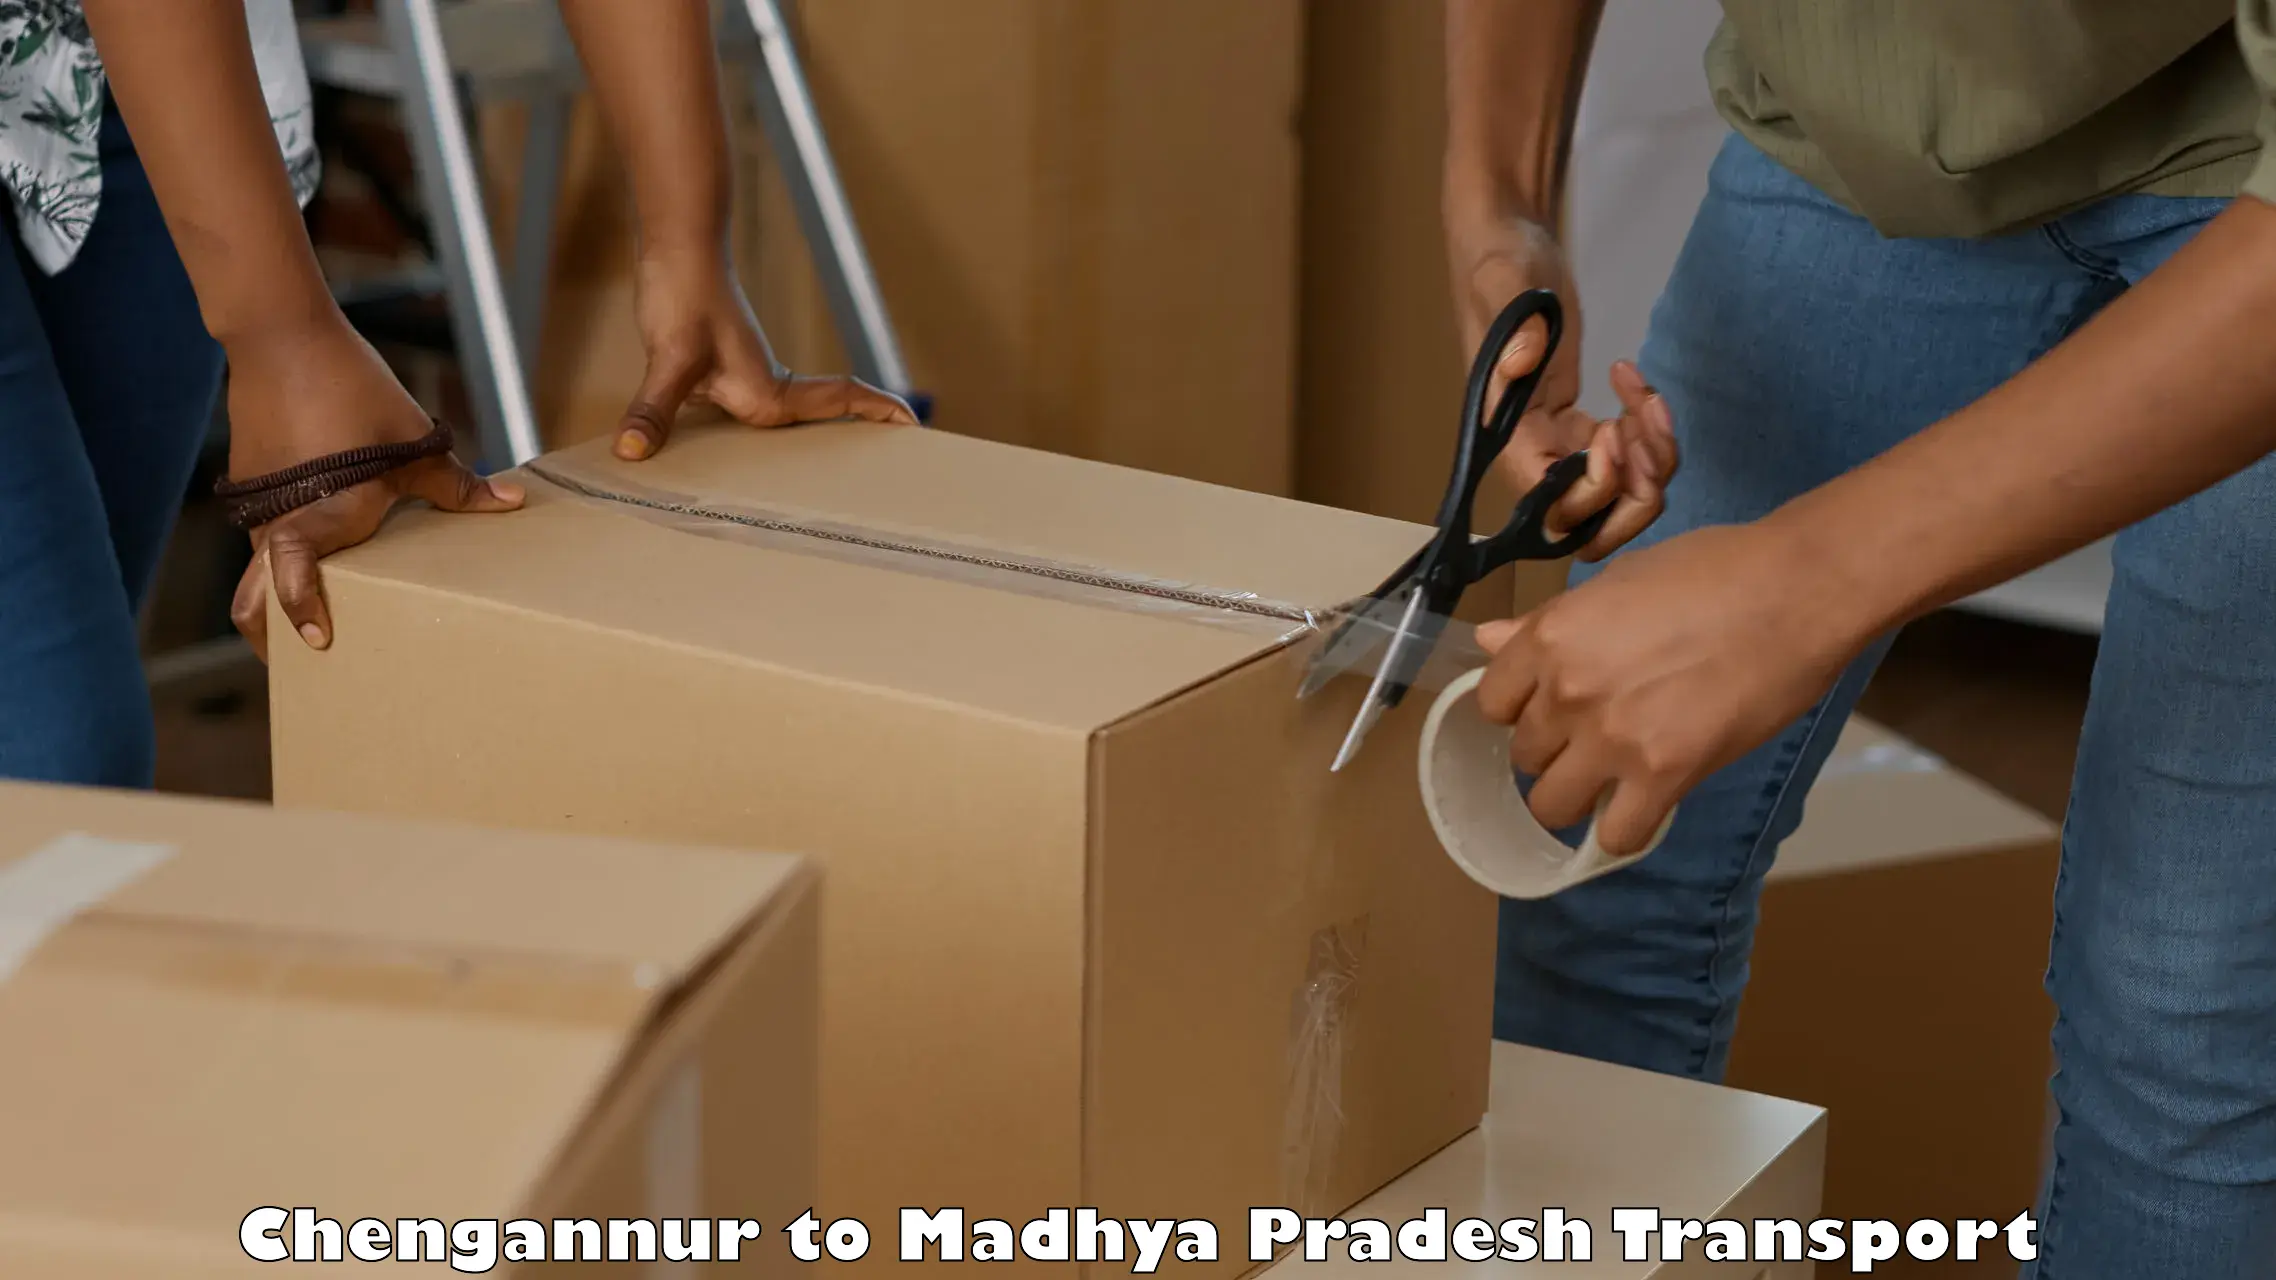 Nearest transport service Chengannur to Madhya Pradesh